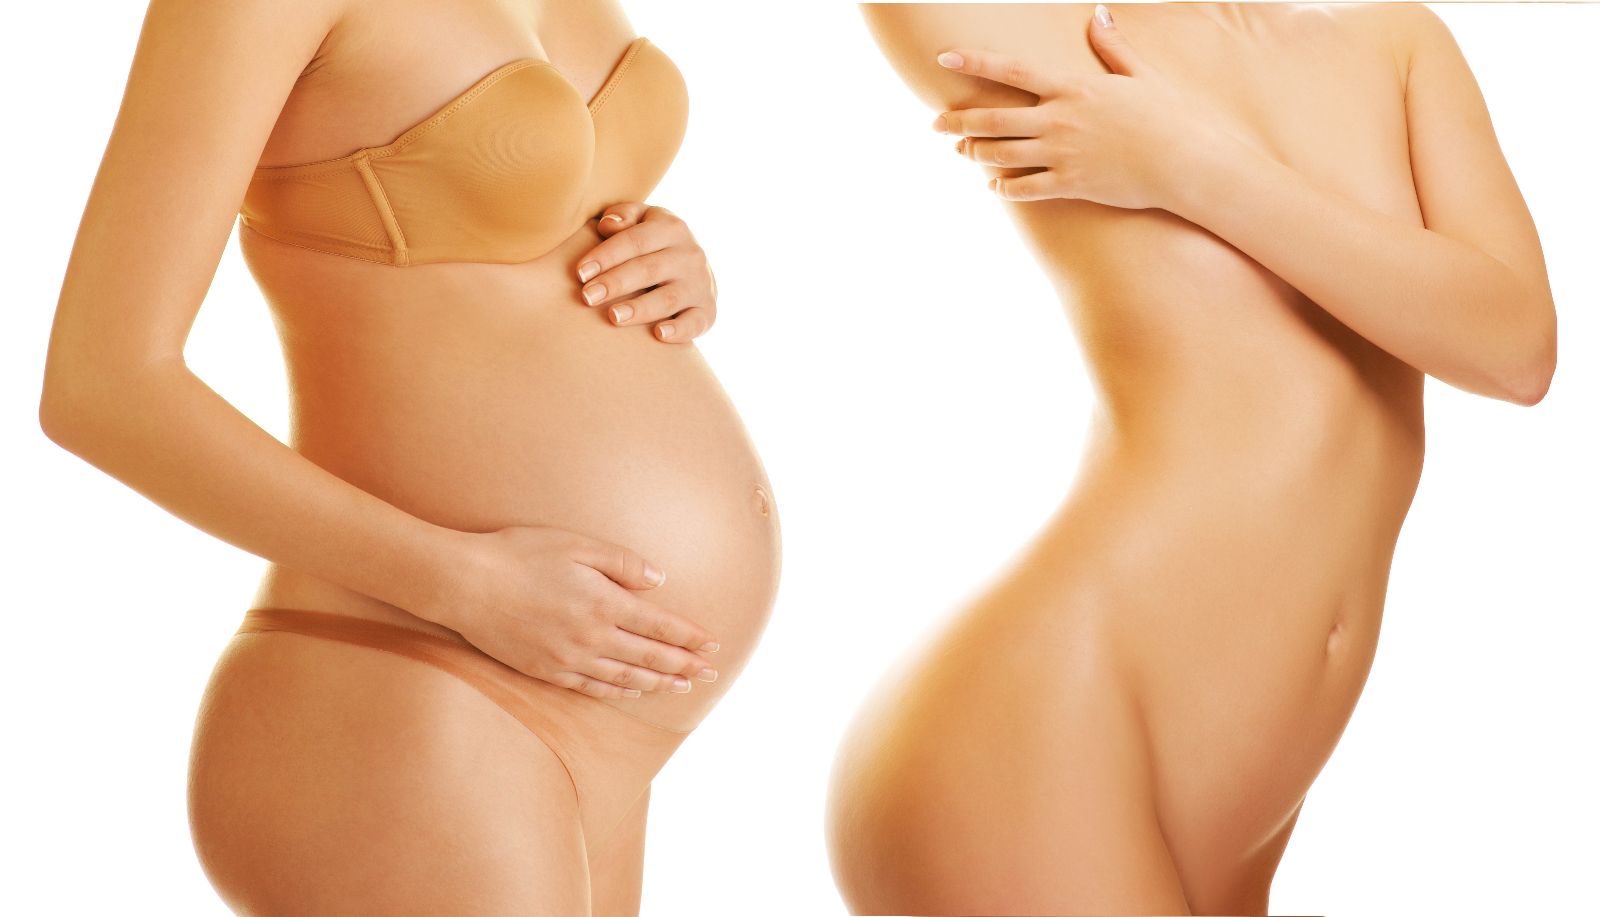 изменение груди во время беременности с фото фото 45